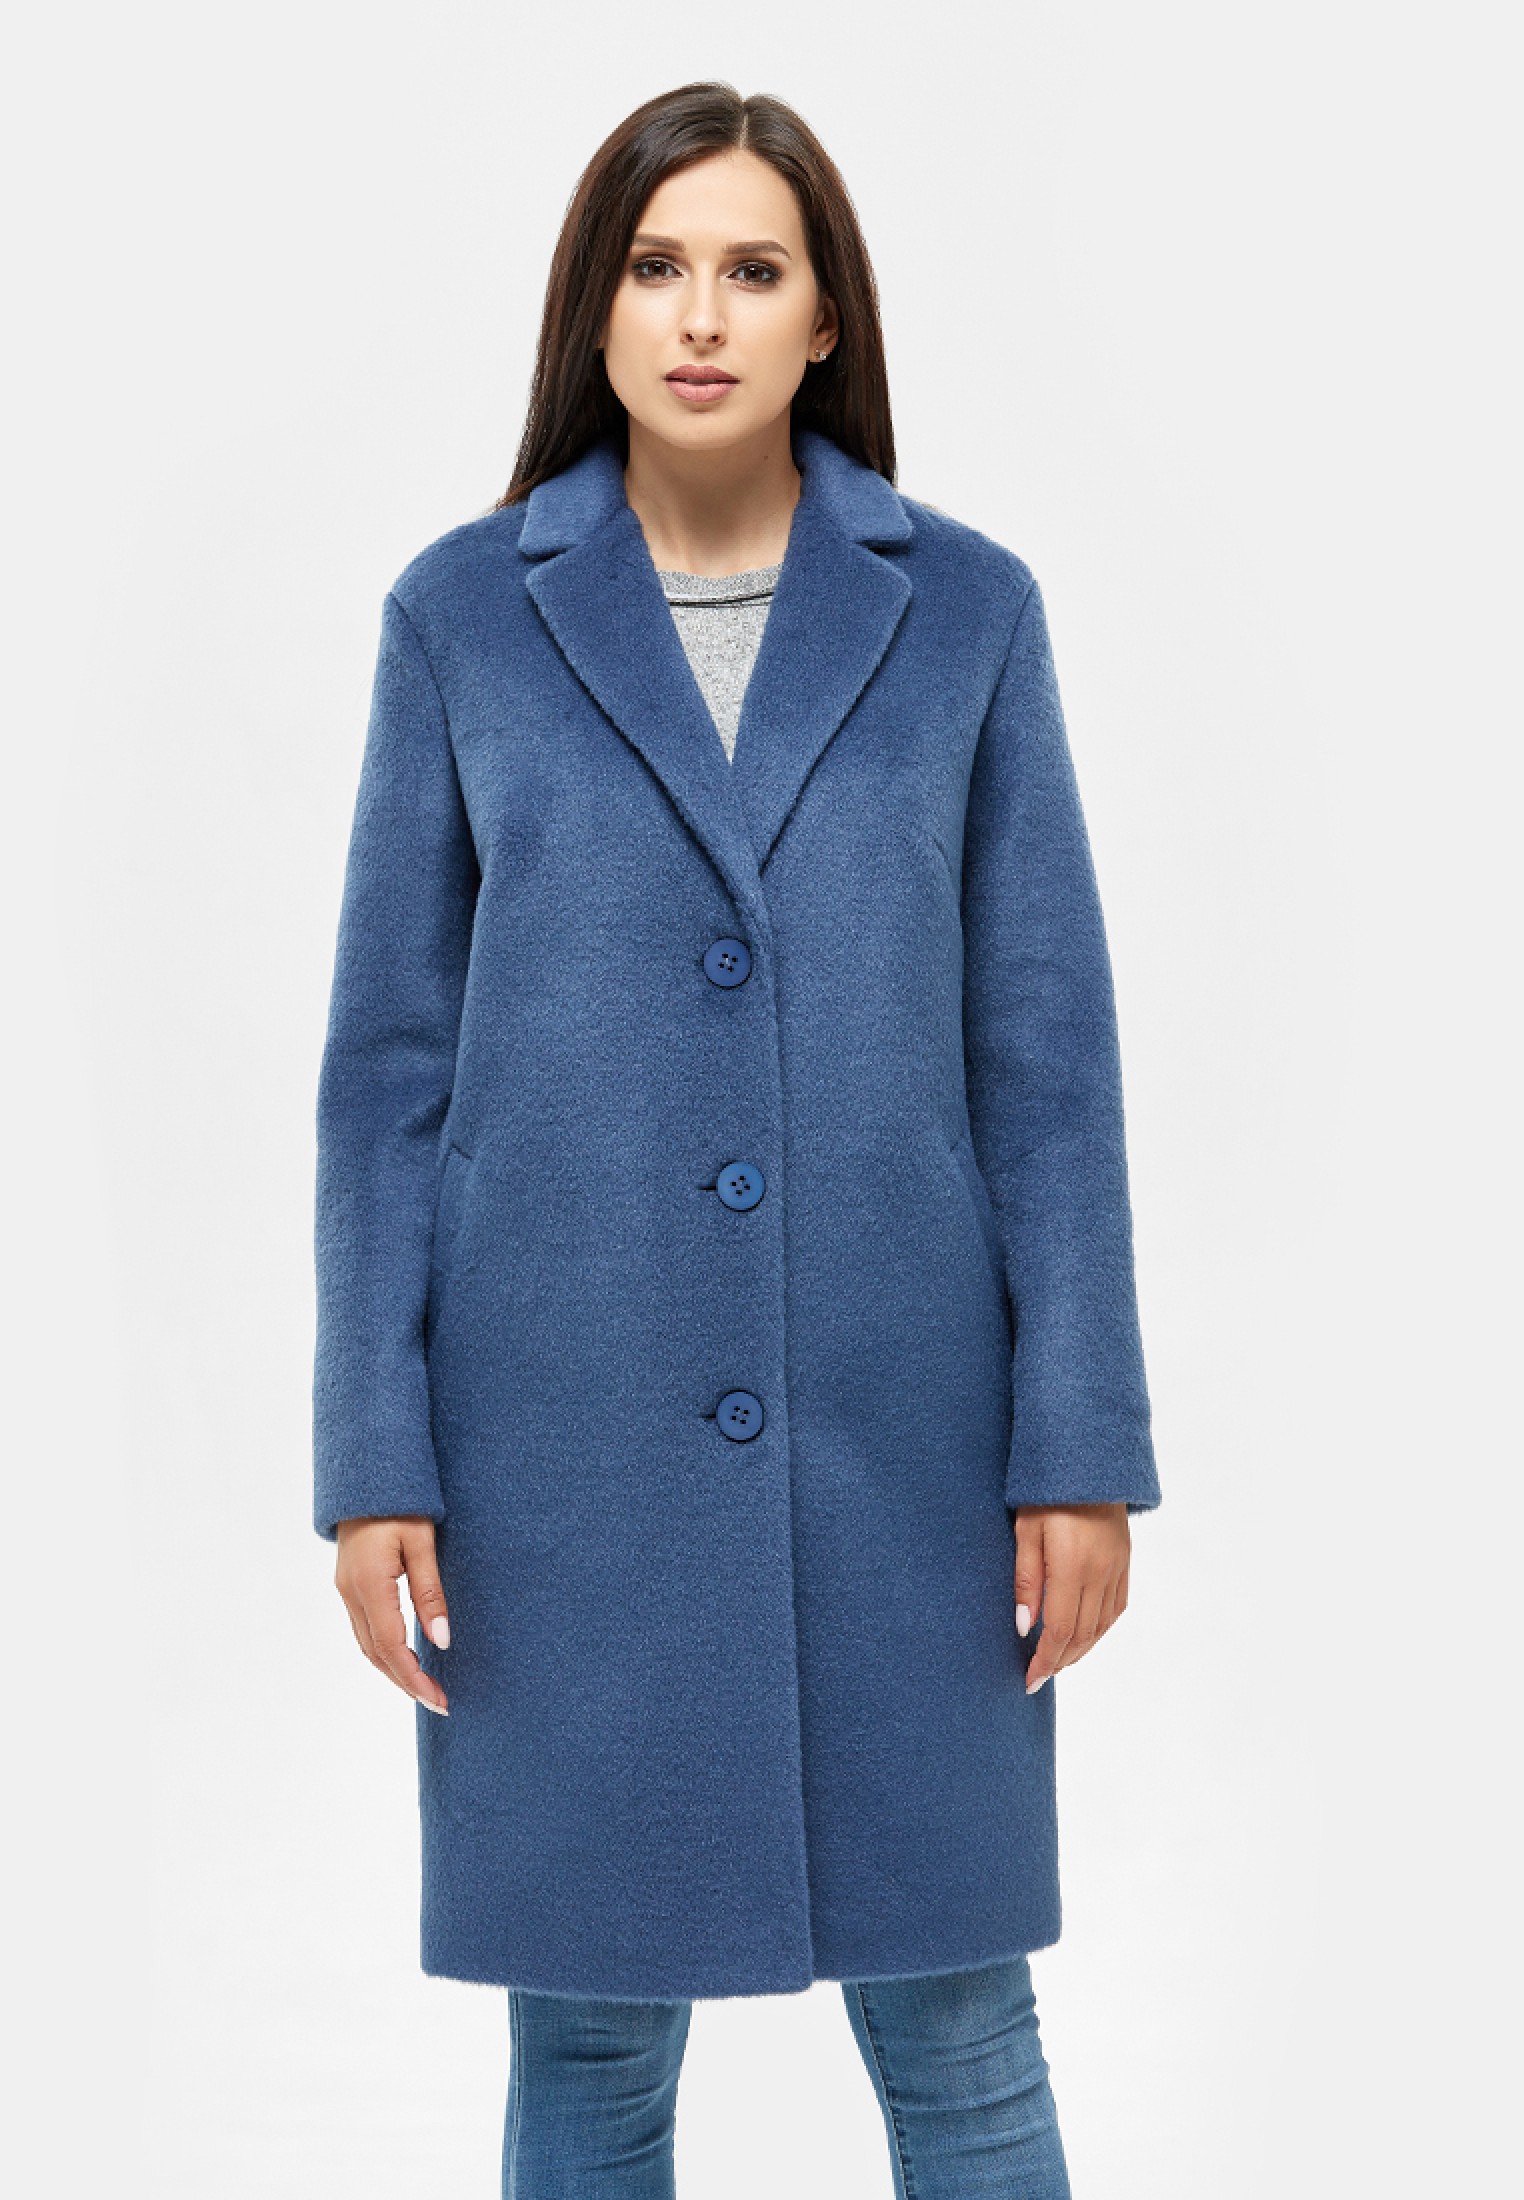 Пальто синее женское демисезонное